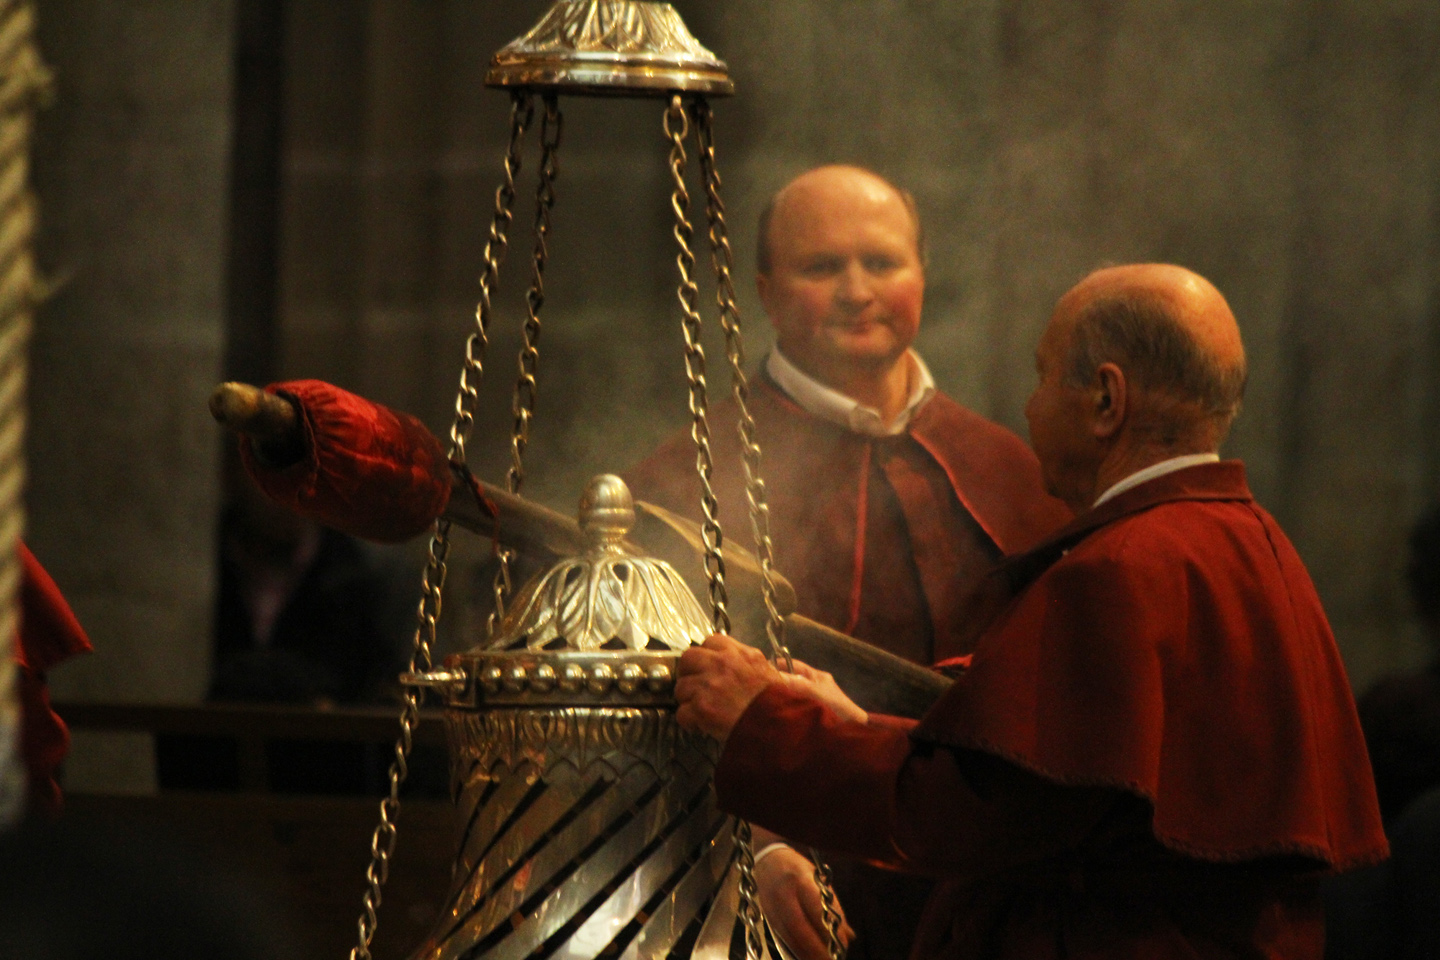 El botafumeiro (textualmente, el “esparcidor de humo”, en el gallego original) es quizá uno de los símbolos más conocidos y populares de la Catedral de Santiago de Compostela.